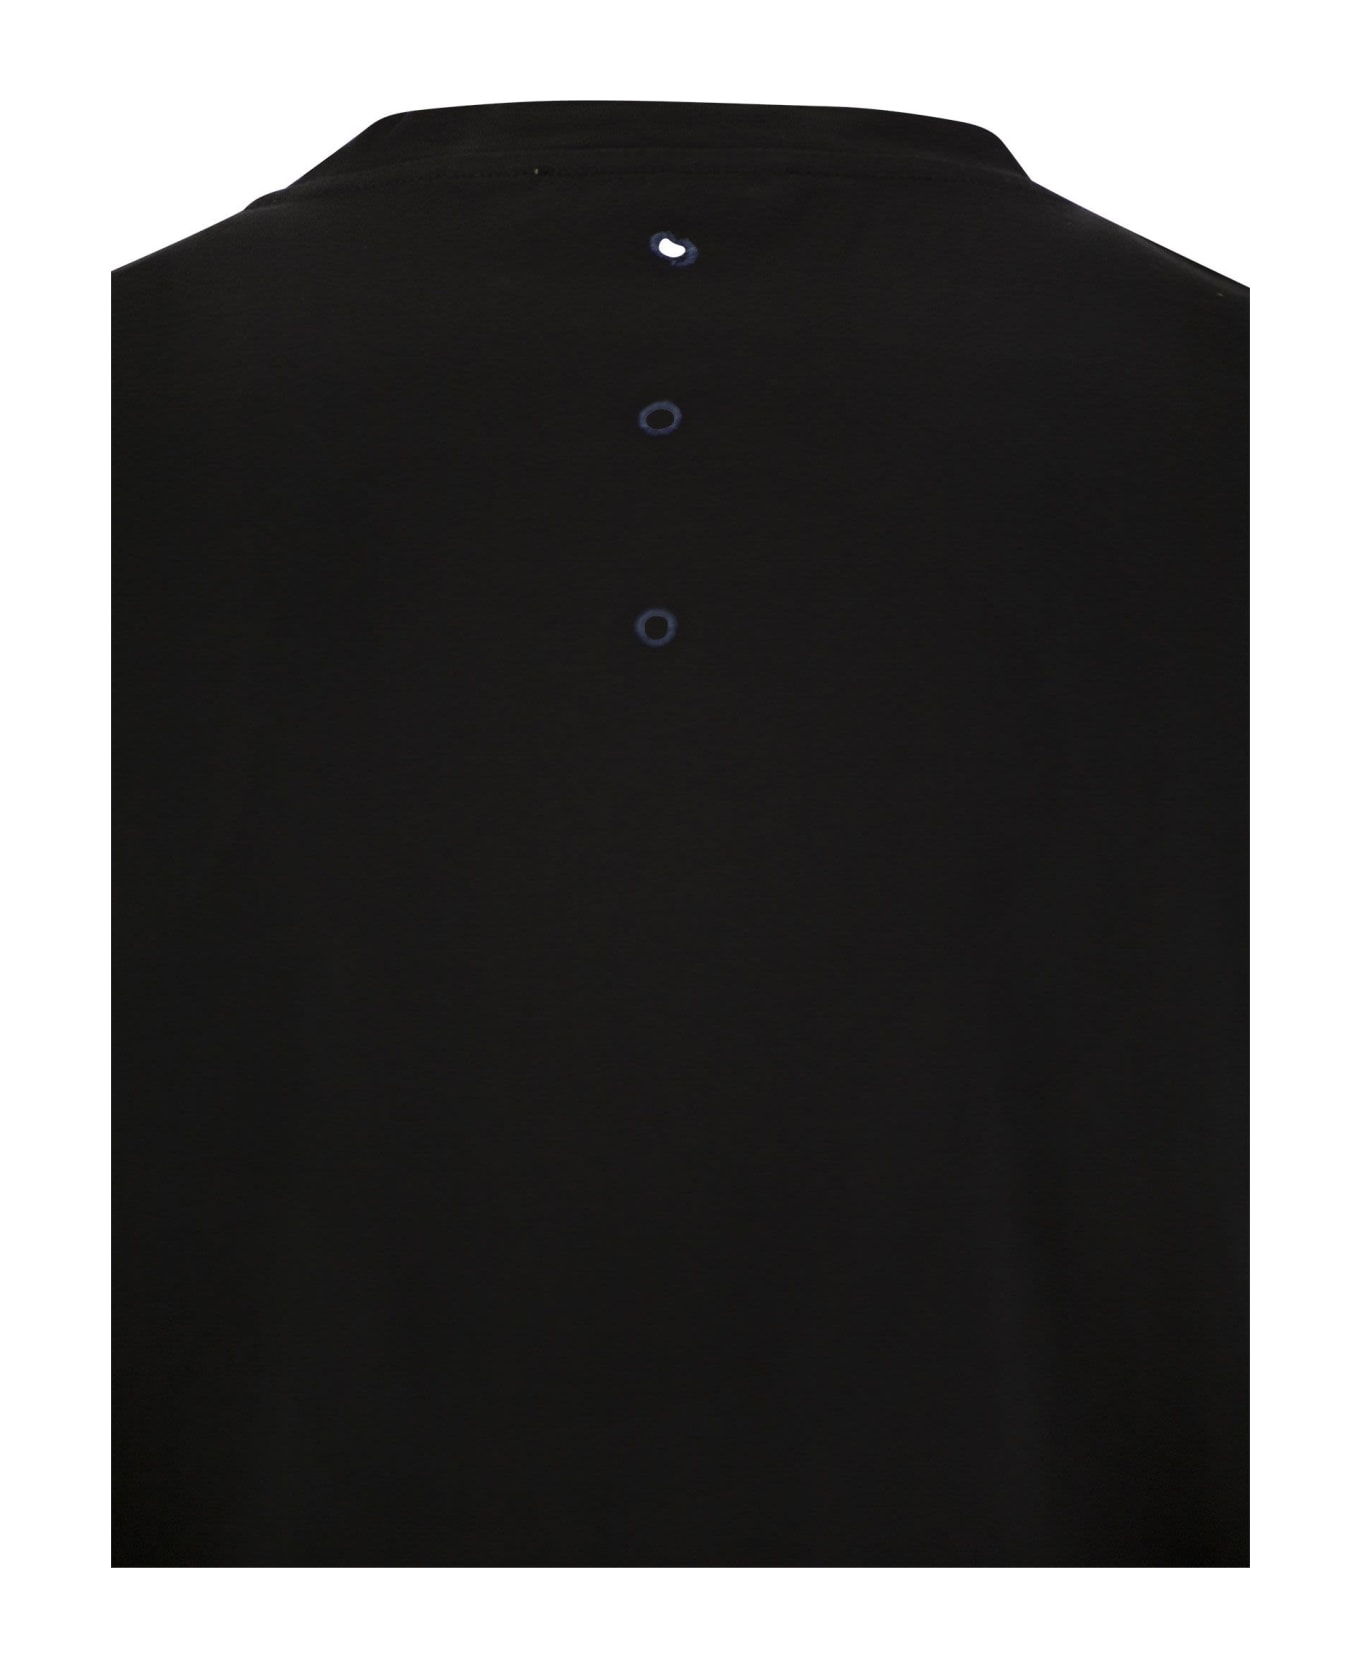 Premiata Cotton Jersey T-shirt - Black